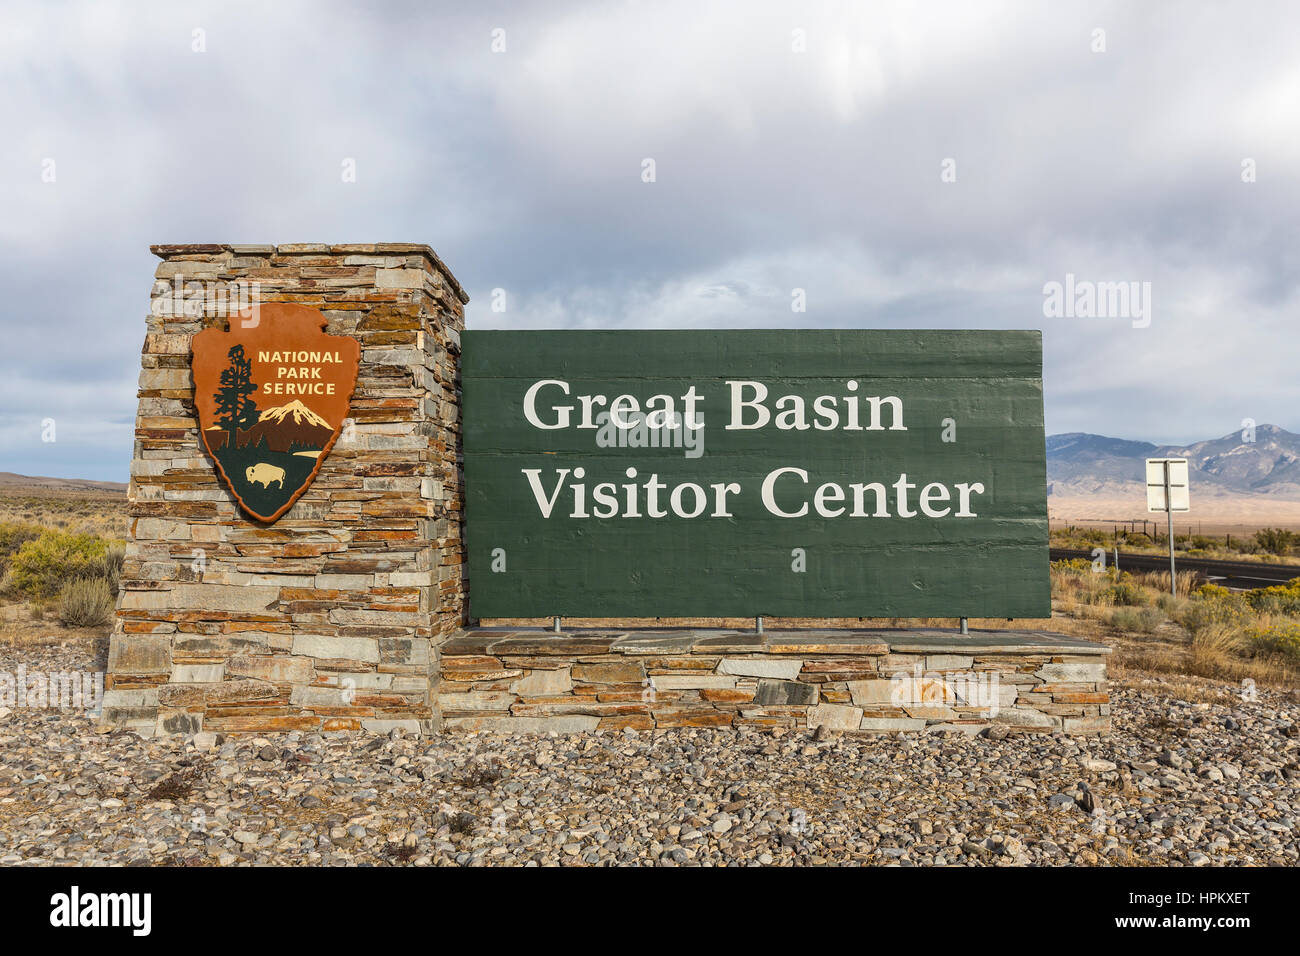 Parco nazionale Great Basin, Nevada, Stati Uniti d'America - 14 Ottobre 2016: Centro visitatori benvenuti accesso al Parco nazionale Great Basin nella parte orientale del Nevada. Foto Stock